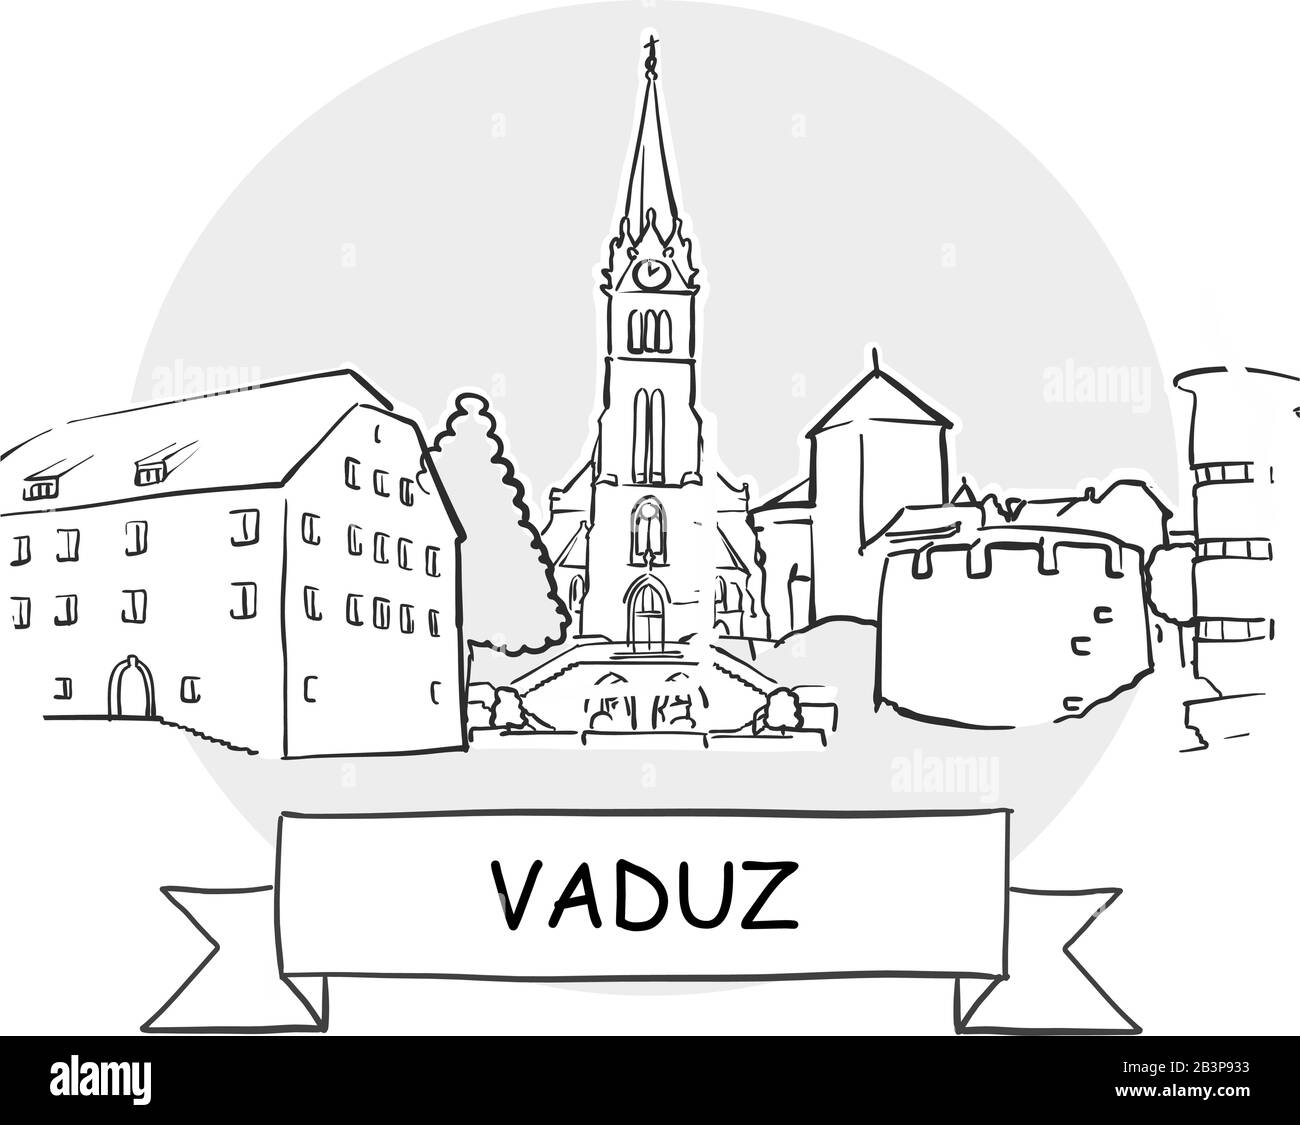 Panneau Vectoriel Vaduz Cityscape. Illustration d'un dessin au trait avec ruban et titre. Illustration de Vecteur